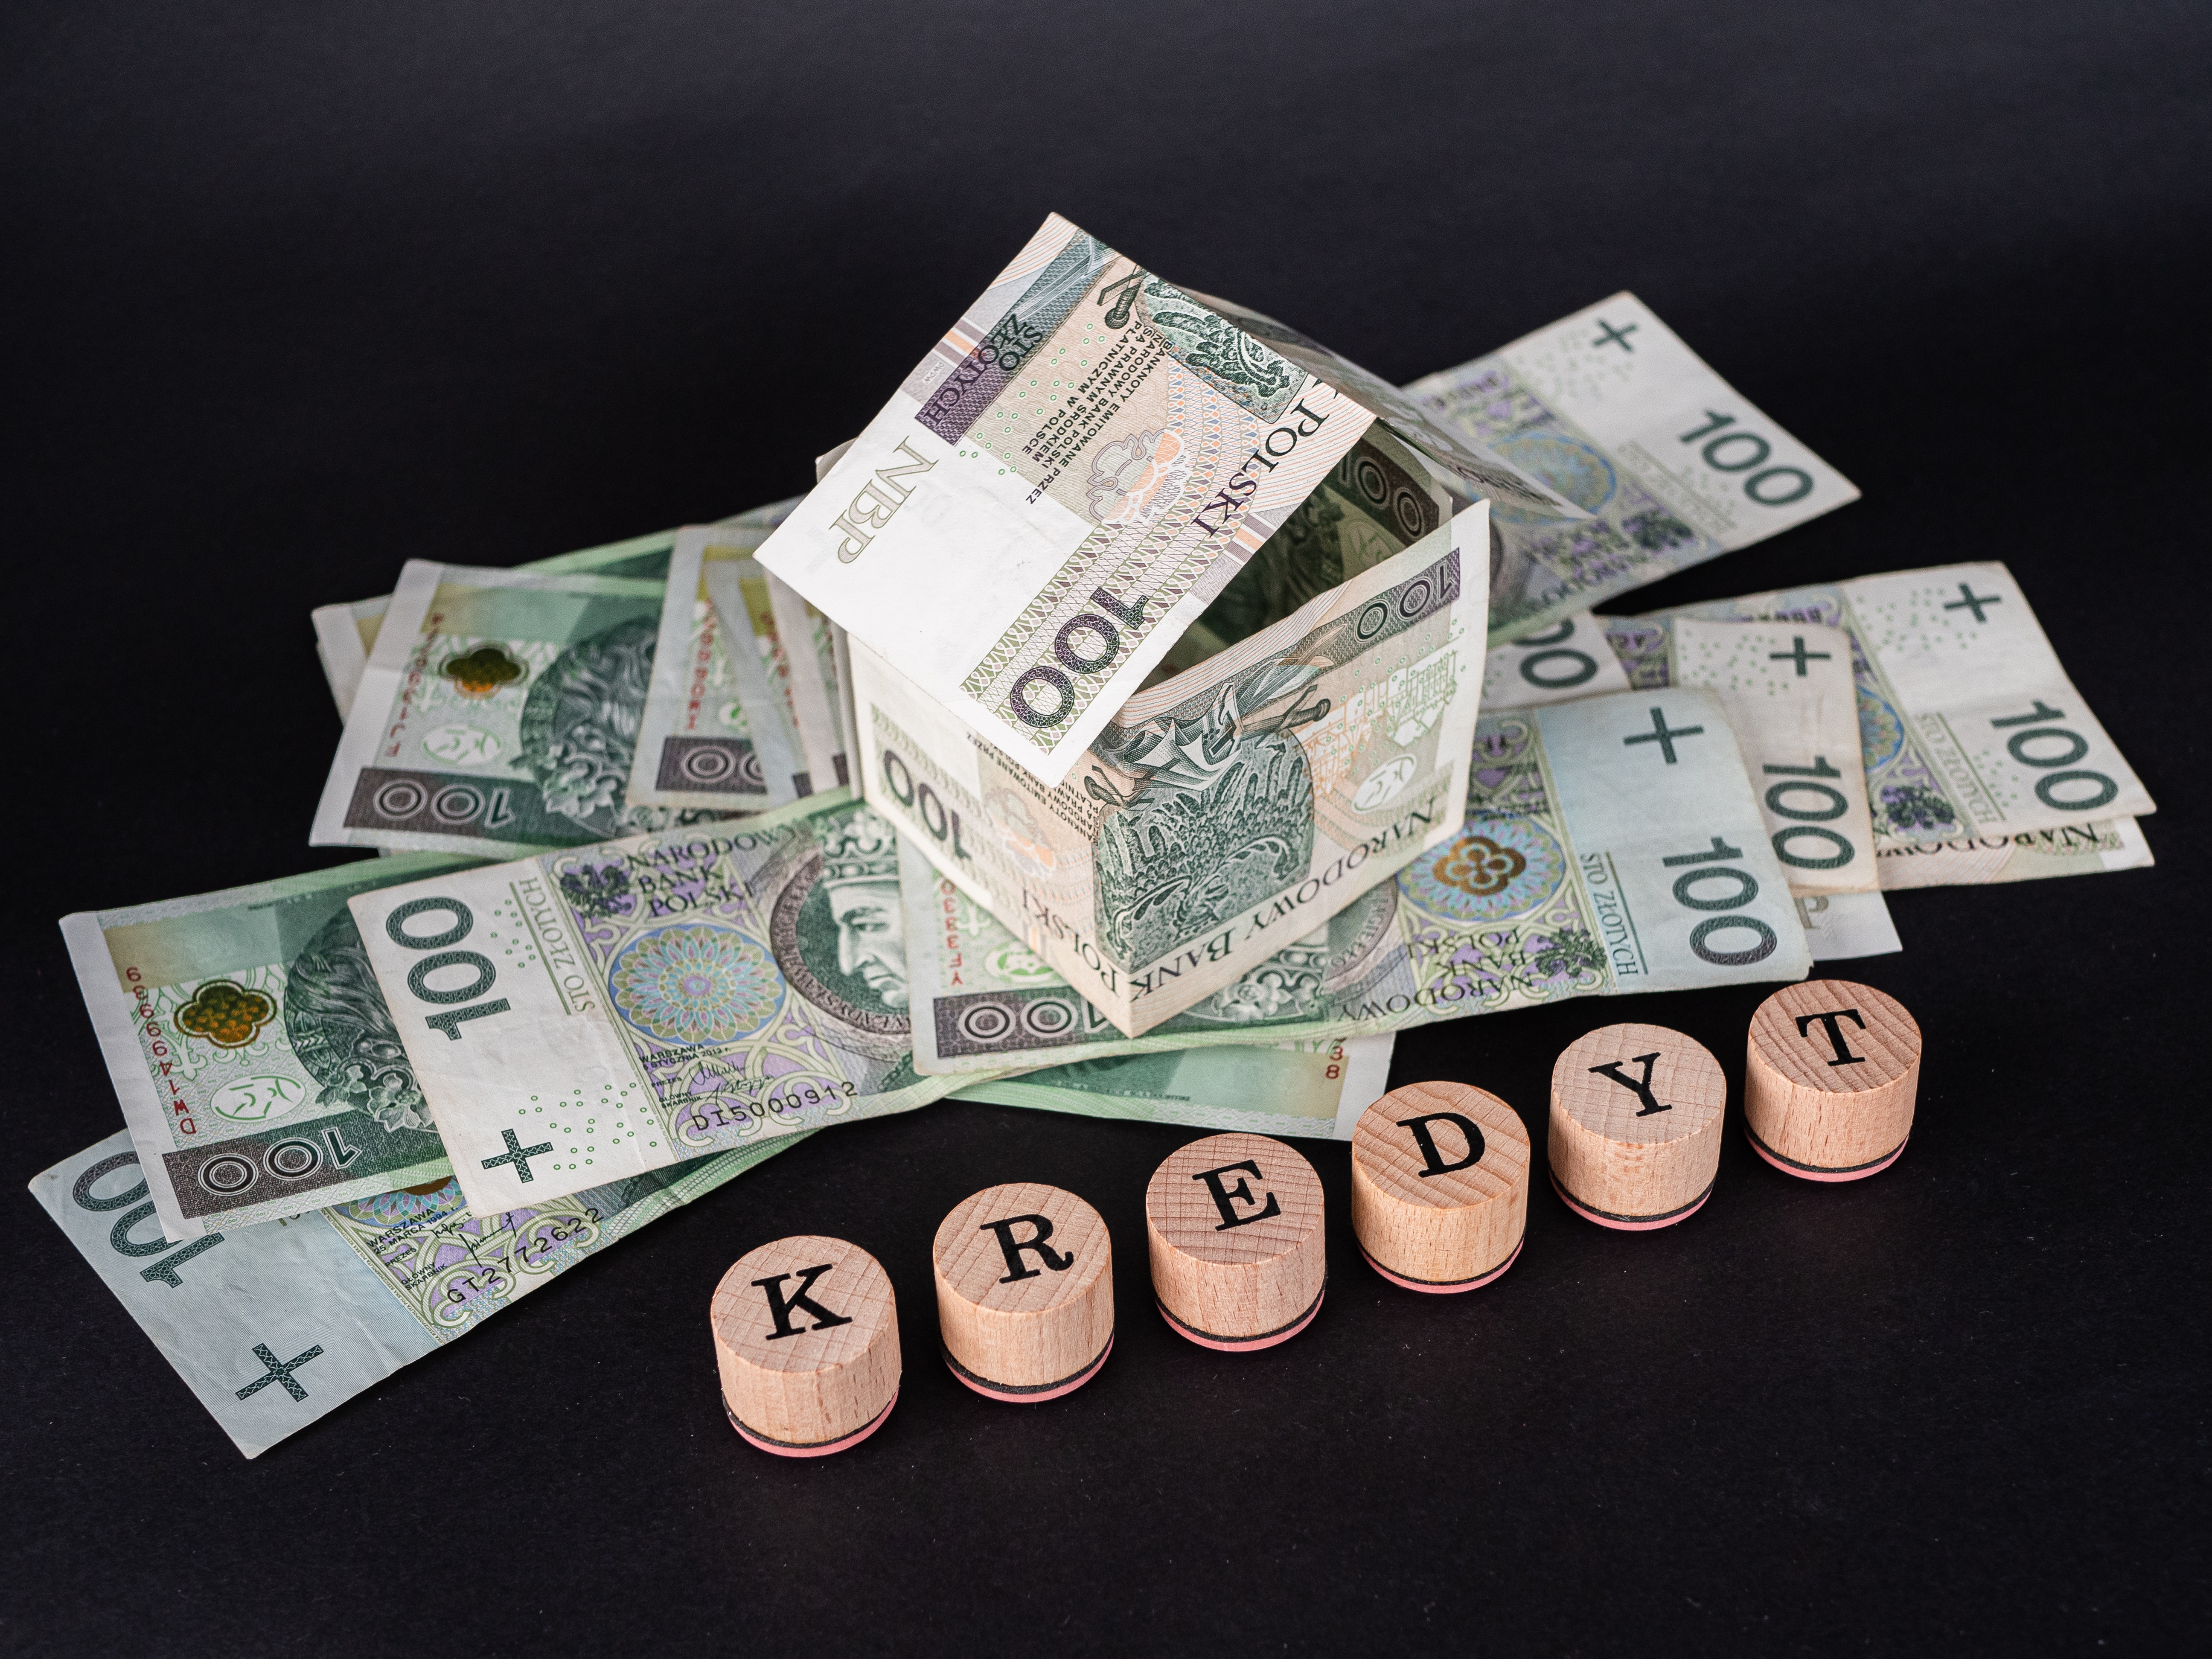 „Darmowy kredyt” - manipulacja czy rzeczywisty zysk? Jak uzyskać sankcję kredytu darmowego?